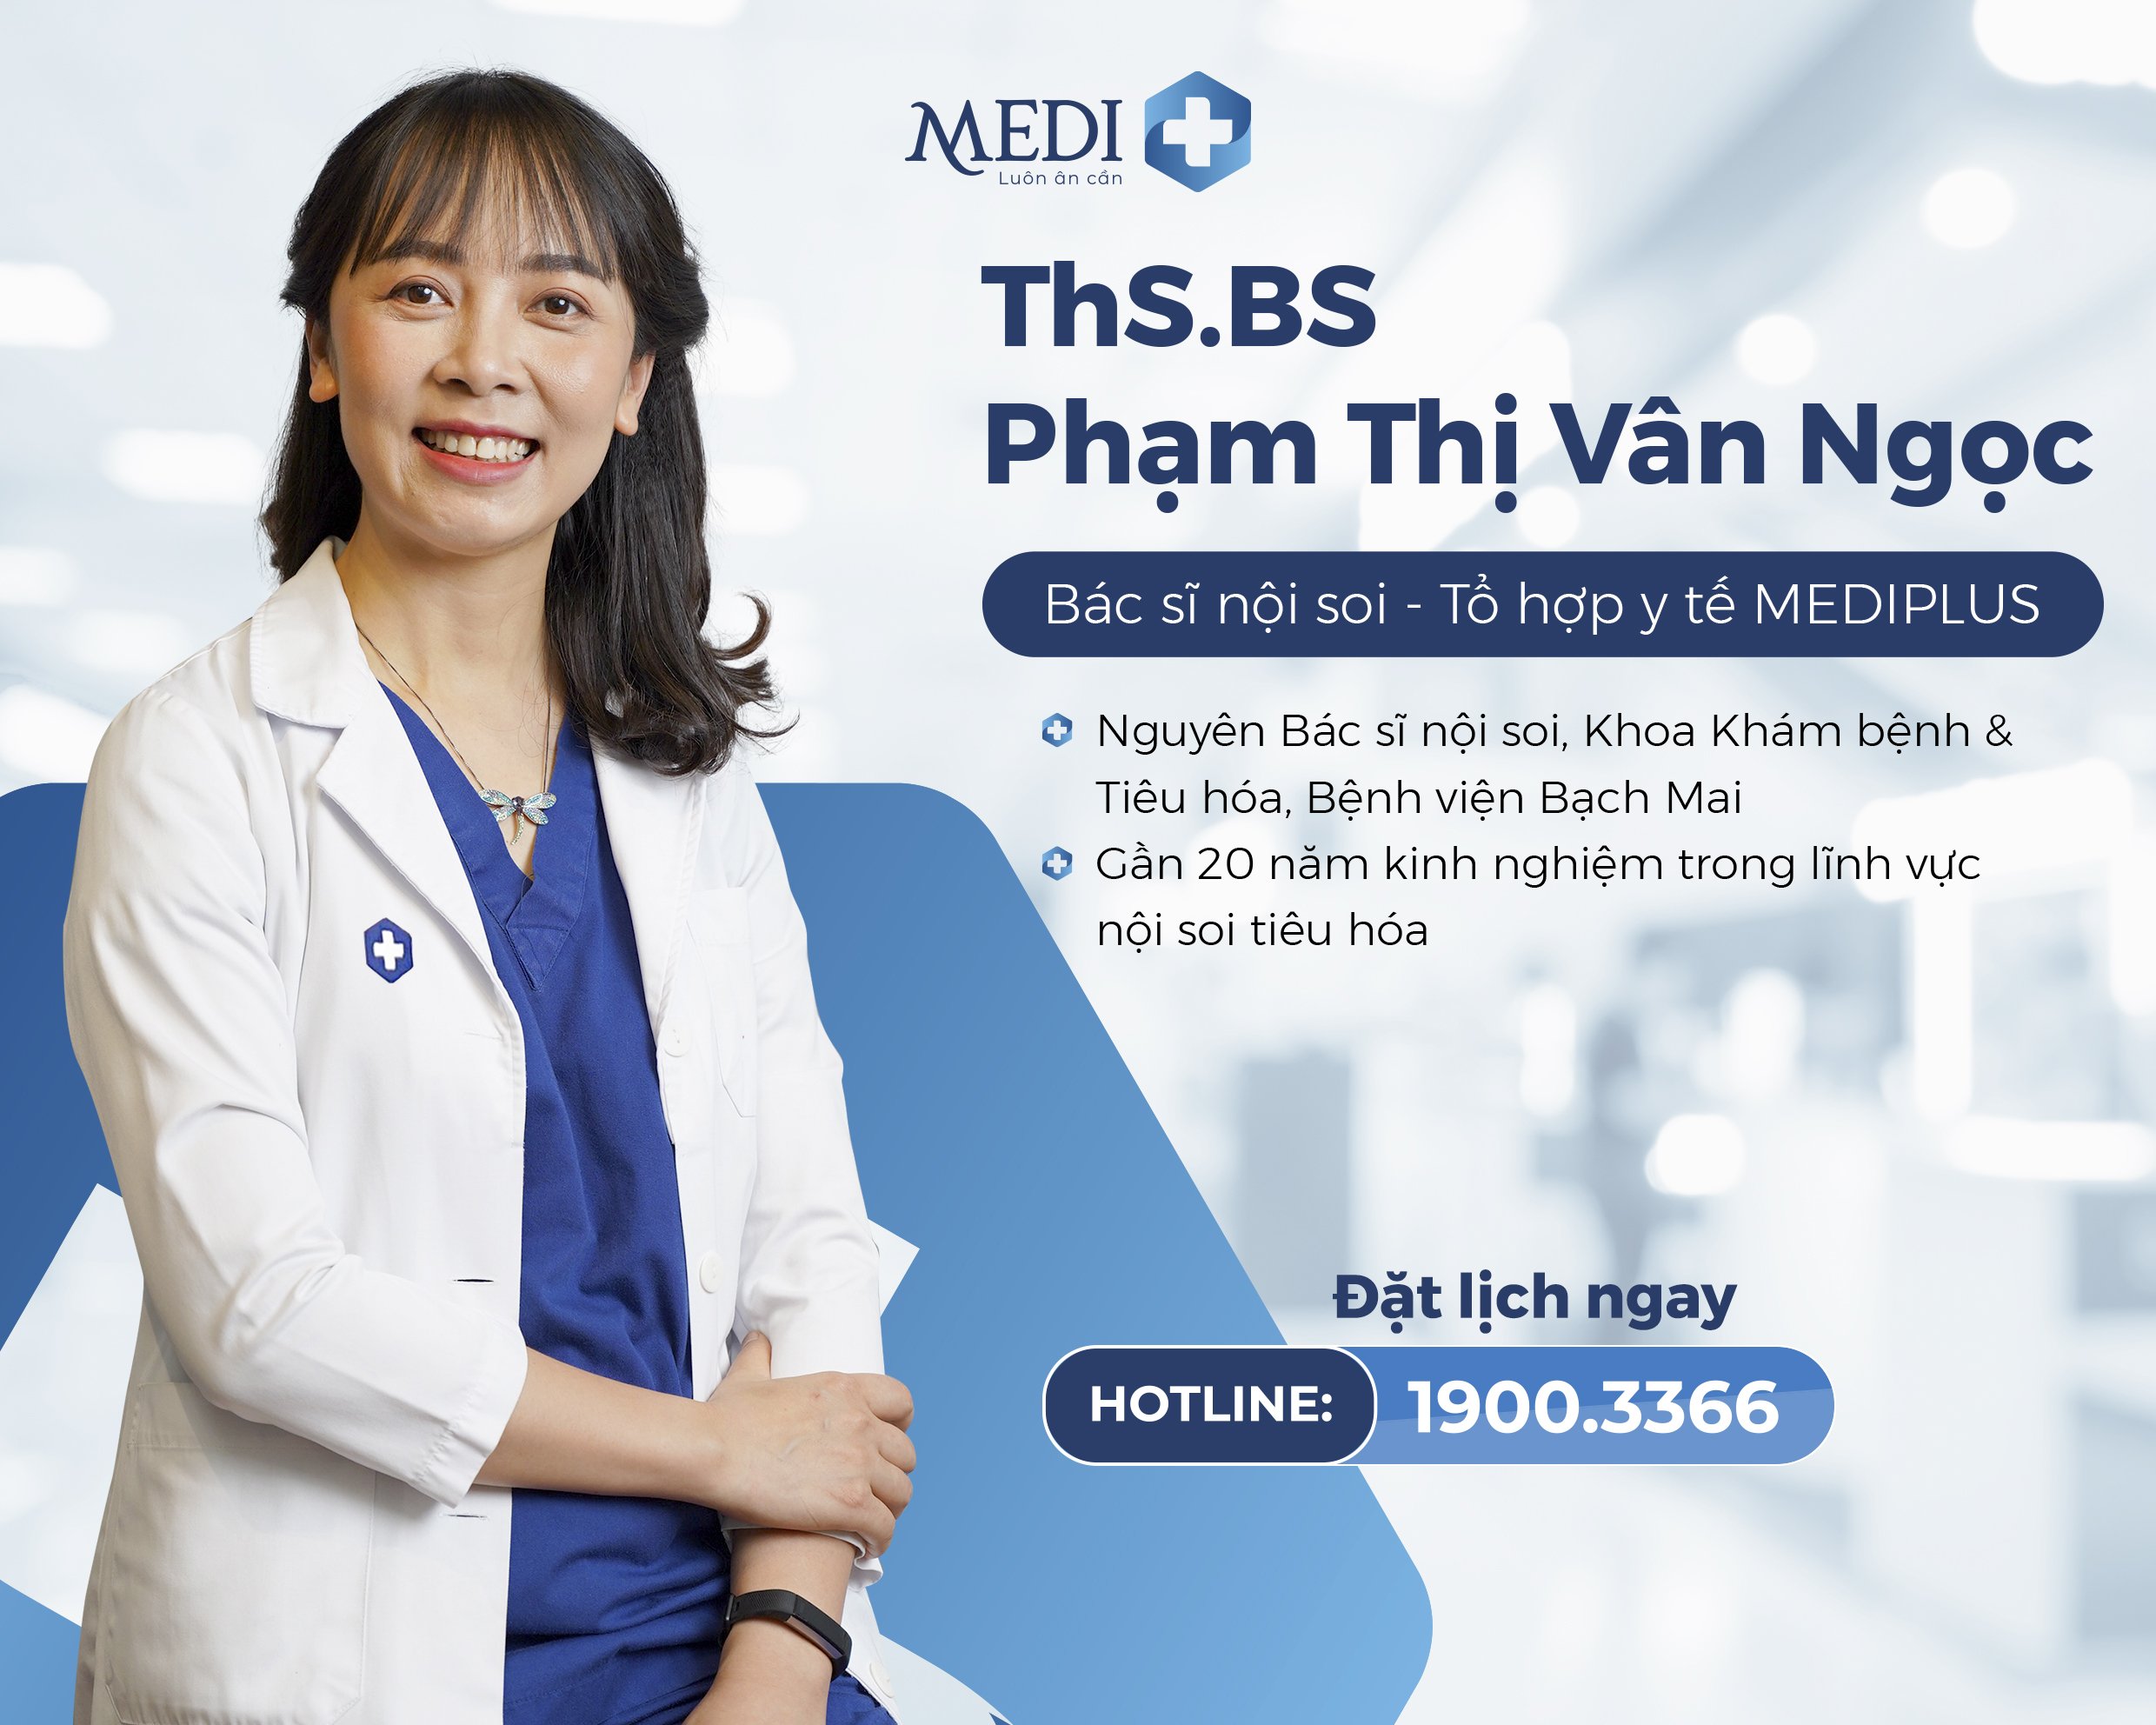 ThS.BS Phạm Thị Vân Ngọc - Nguyên bác sĩ nội soi Bệnh viện Bạch Mai